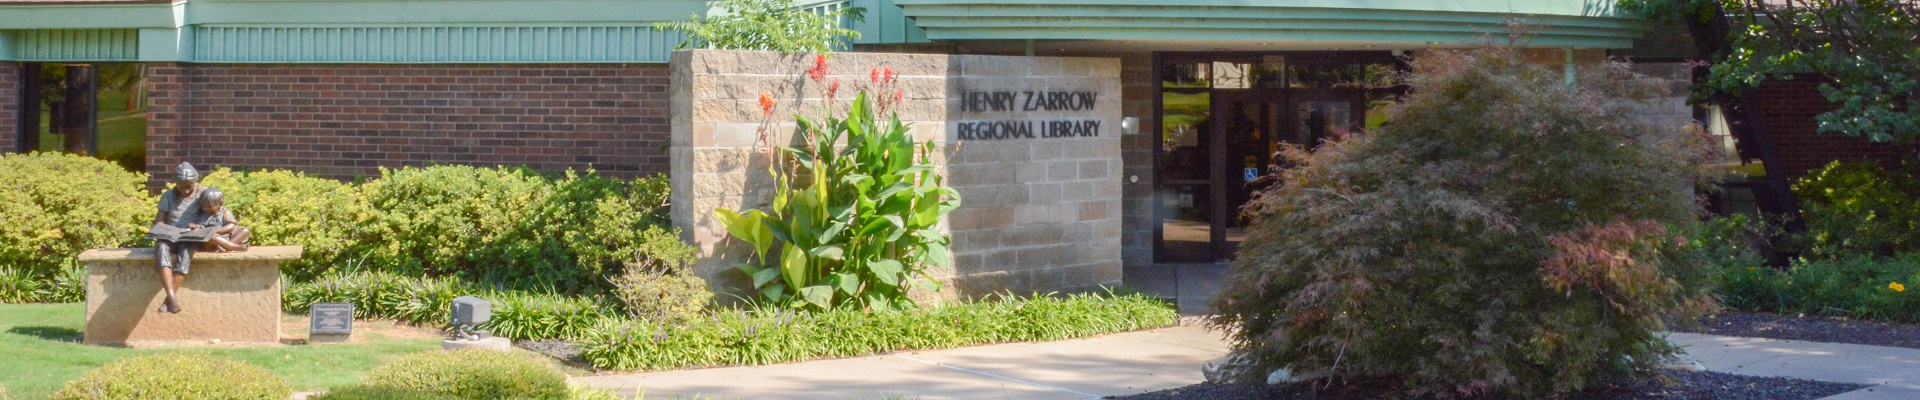 Zarrow Regional Library